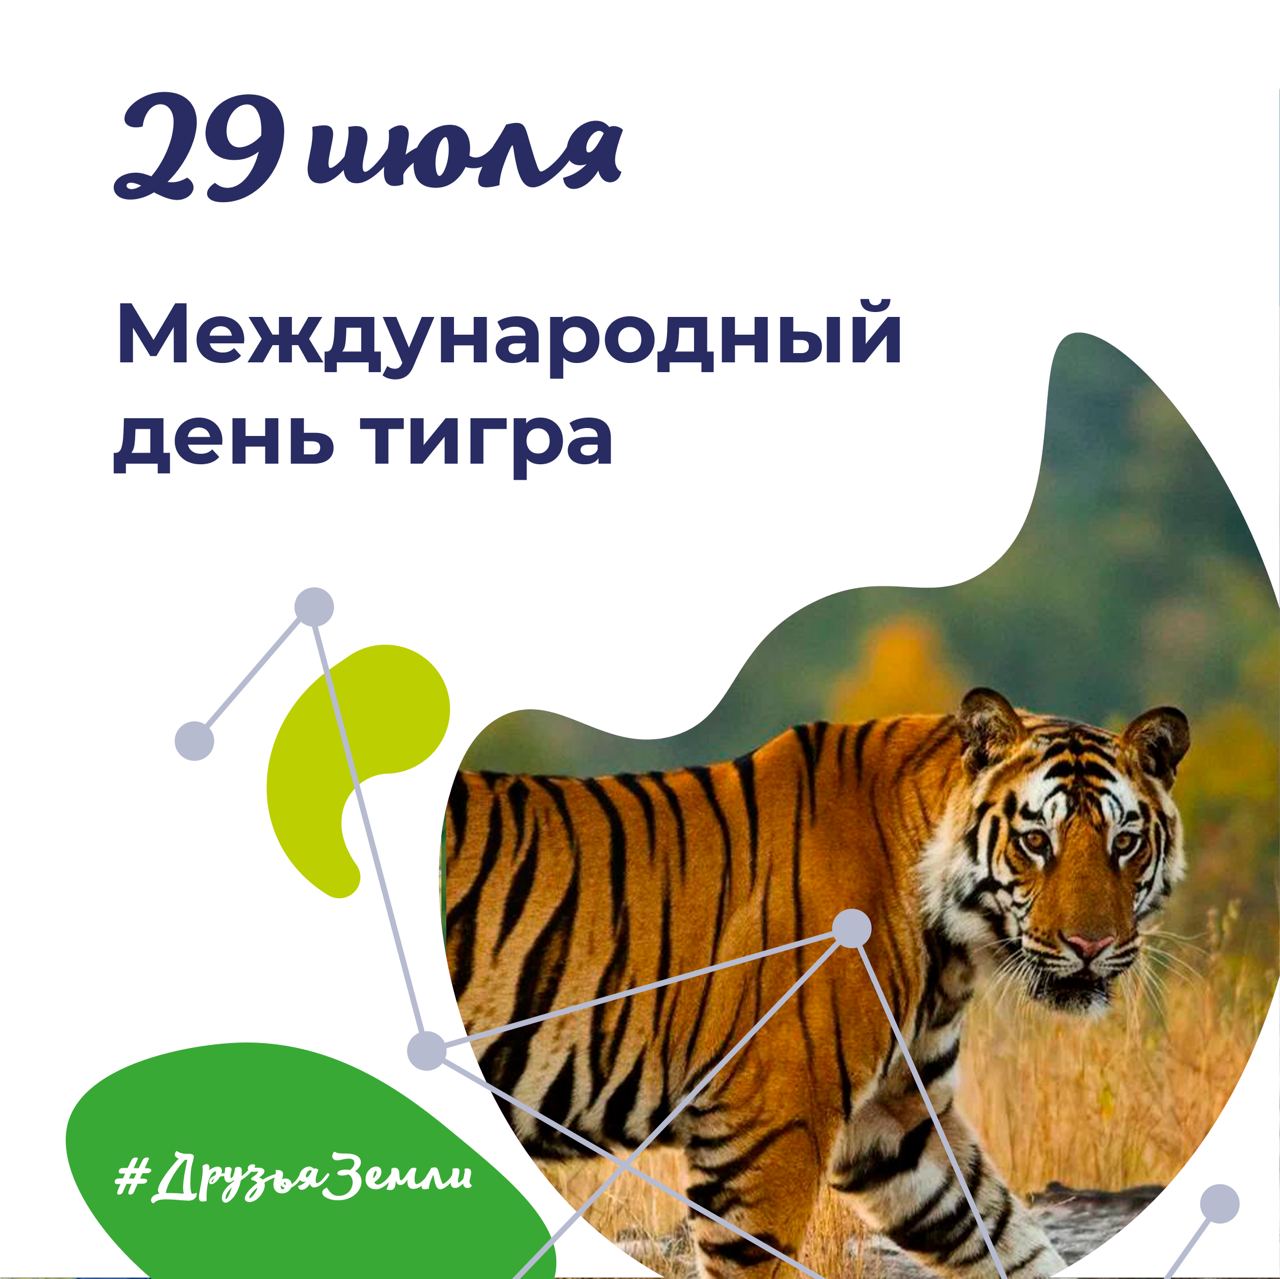 Международный день тигра (International Tiger Day).